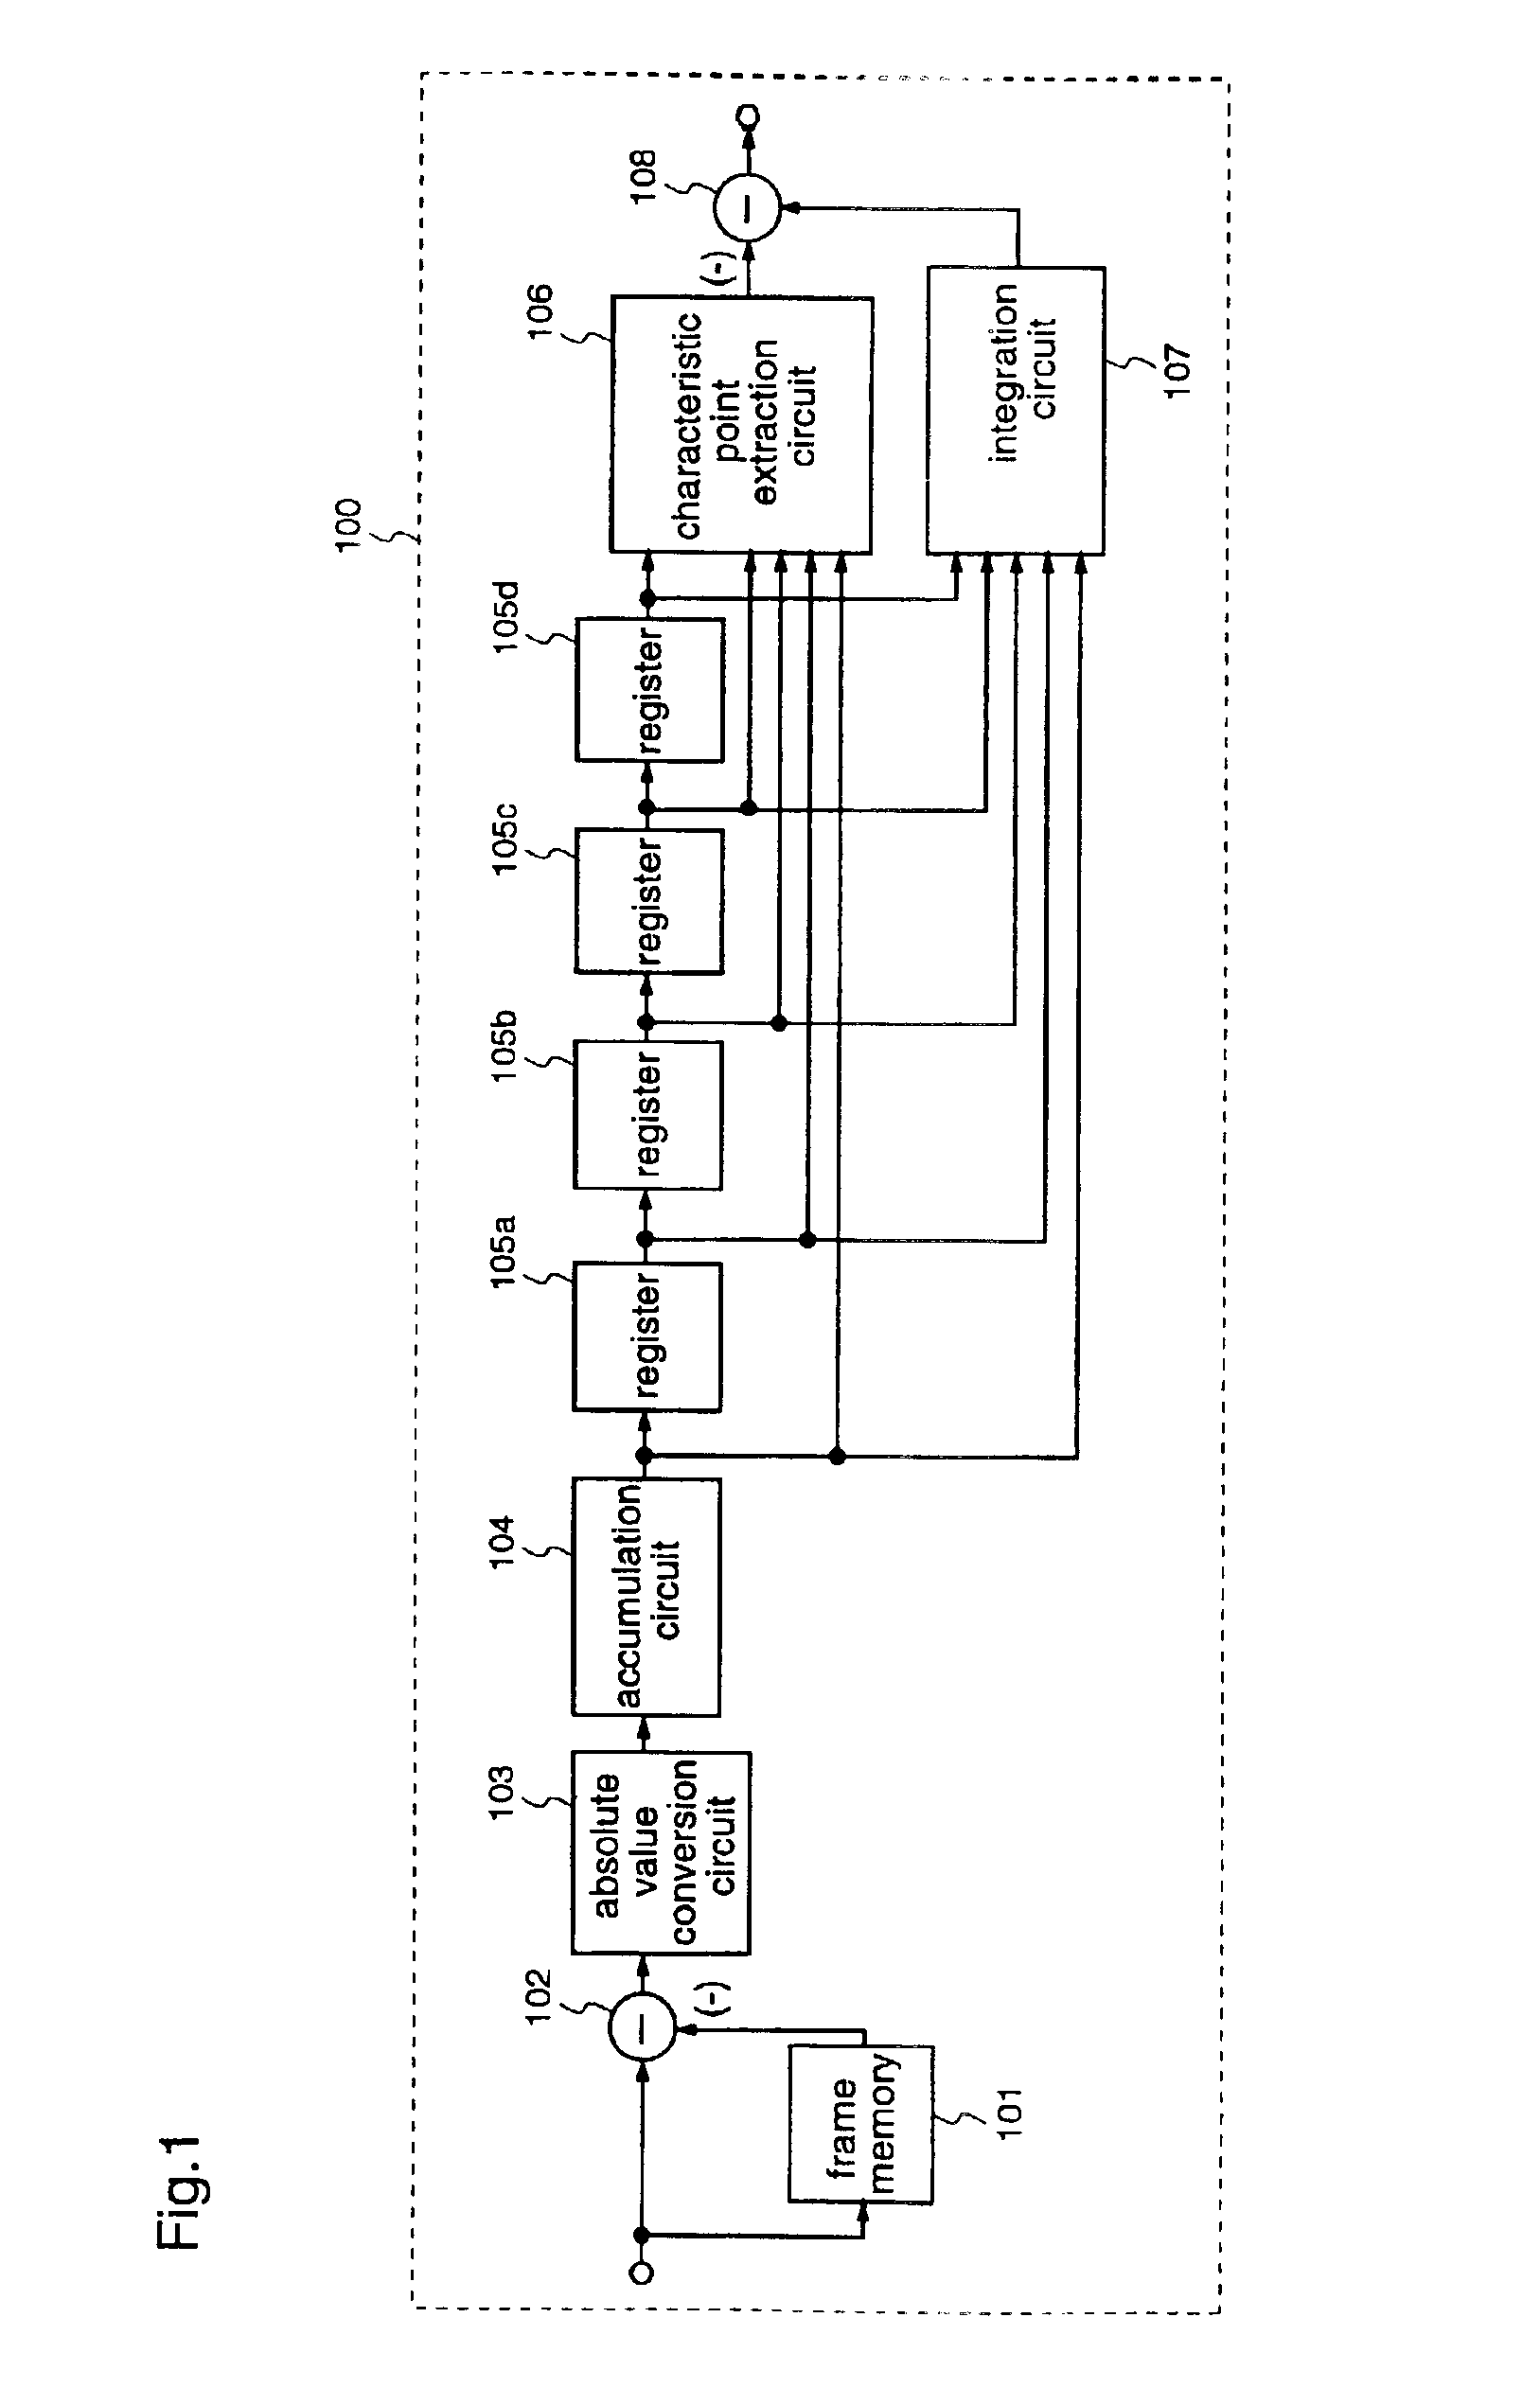 Image motion detecting circuit